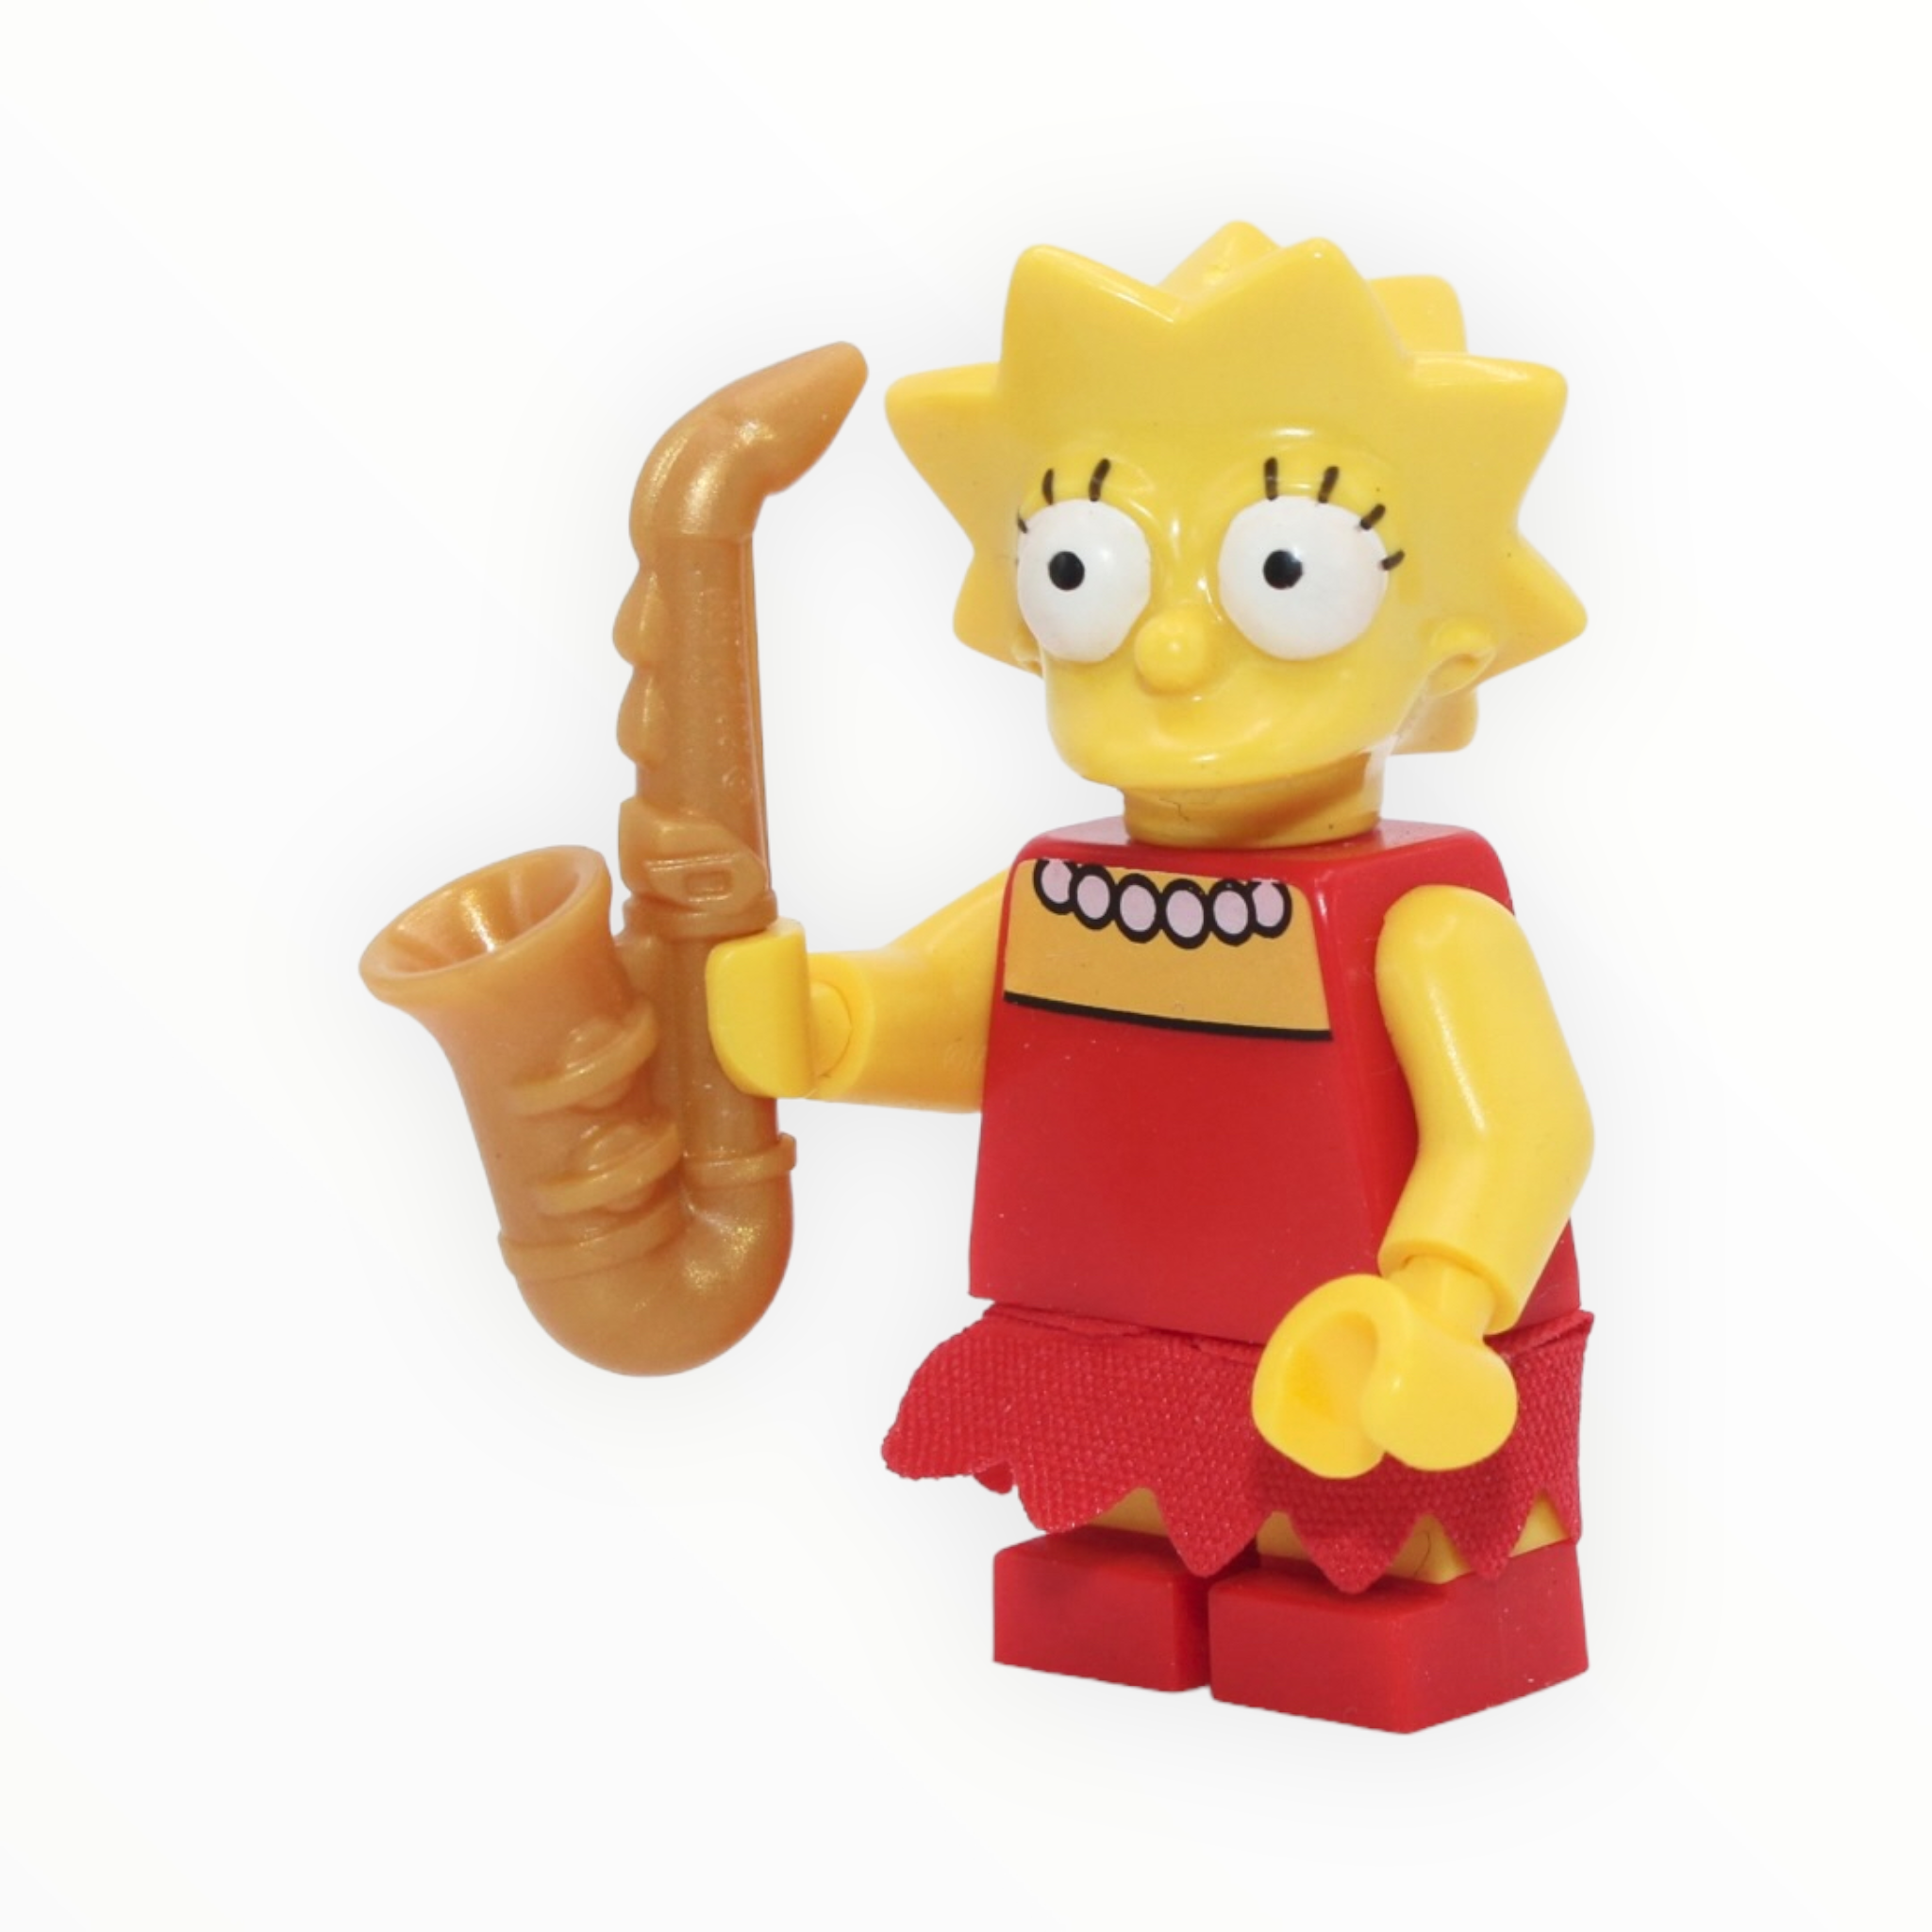 Simpsons Series: Lisa Simpson